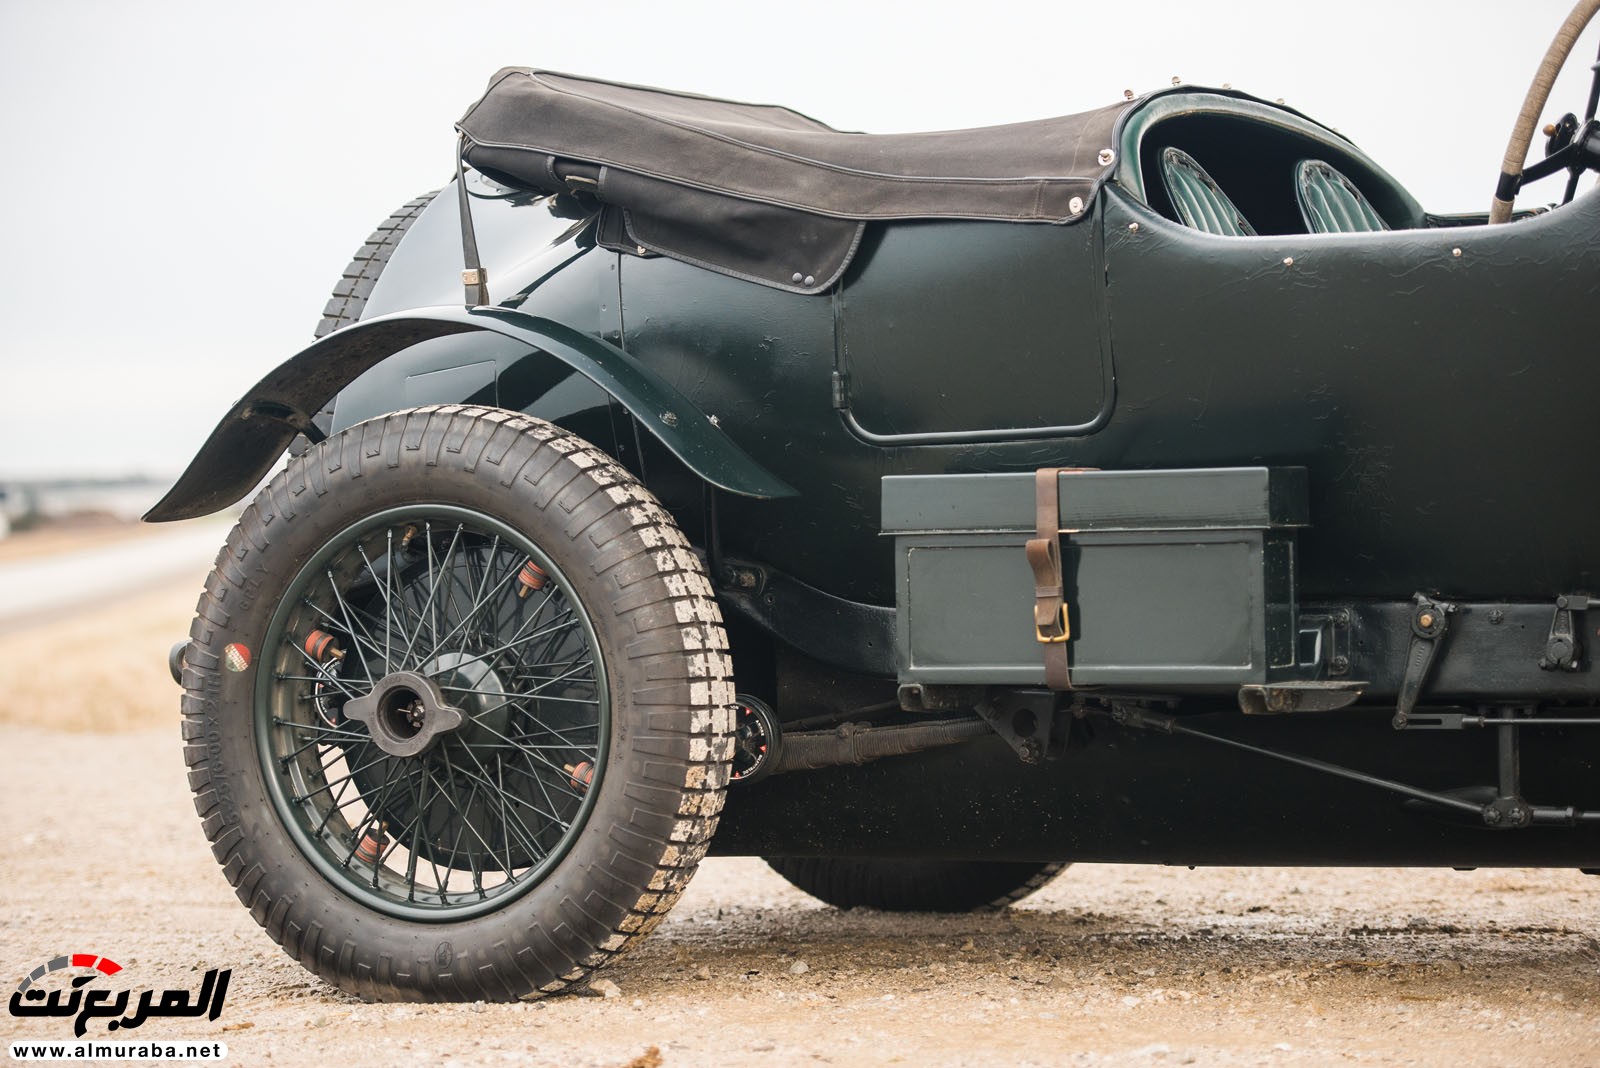 "بالصور" سيارة بنتلي موديل 1928 المشاركة في سباقات لومان تعرض بـ 7 مليون دولار في مزاد علني 94